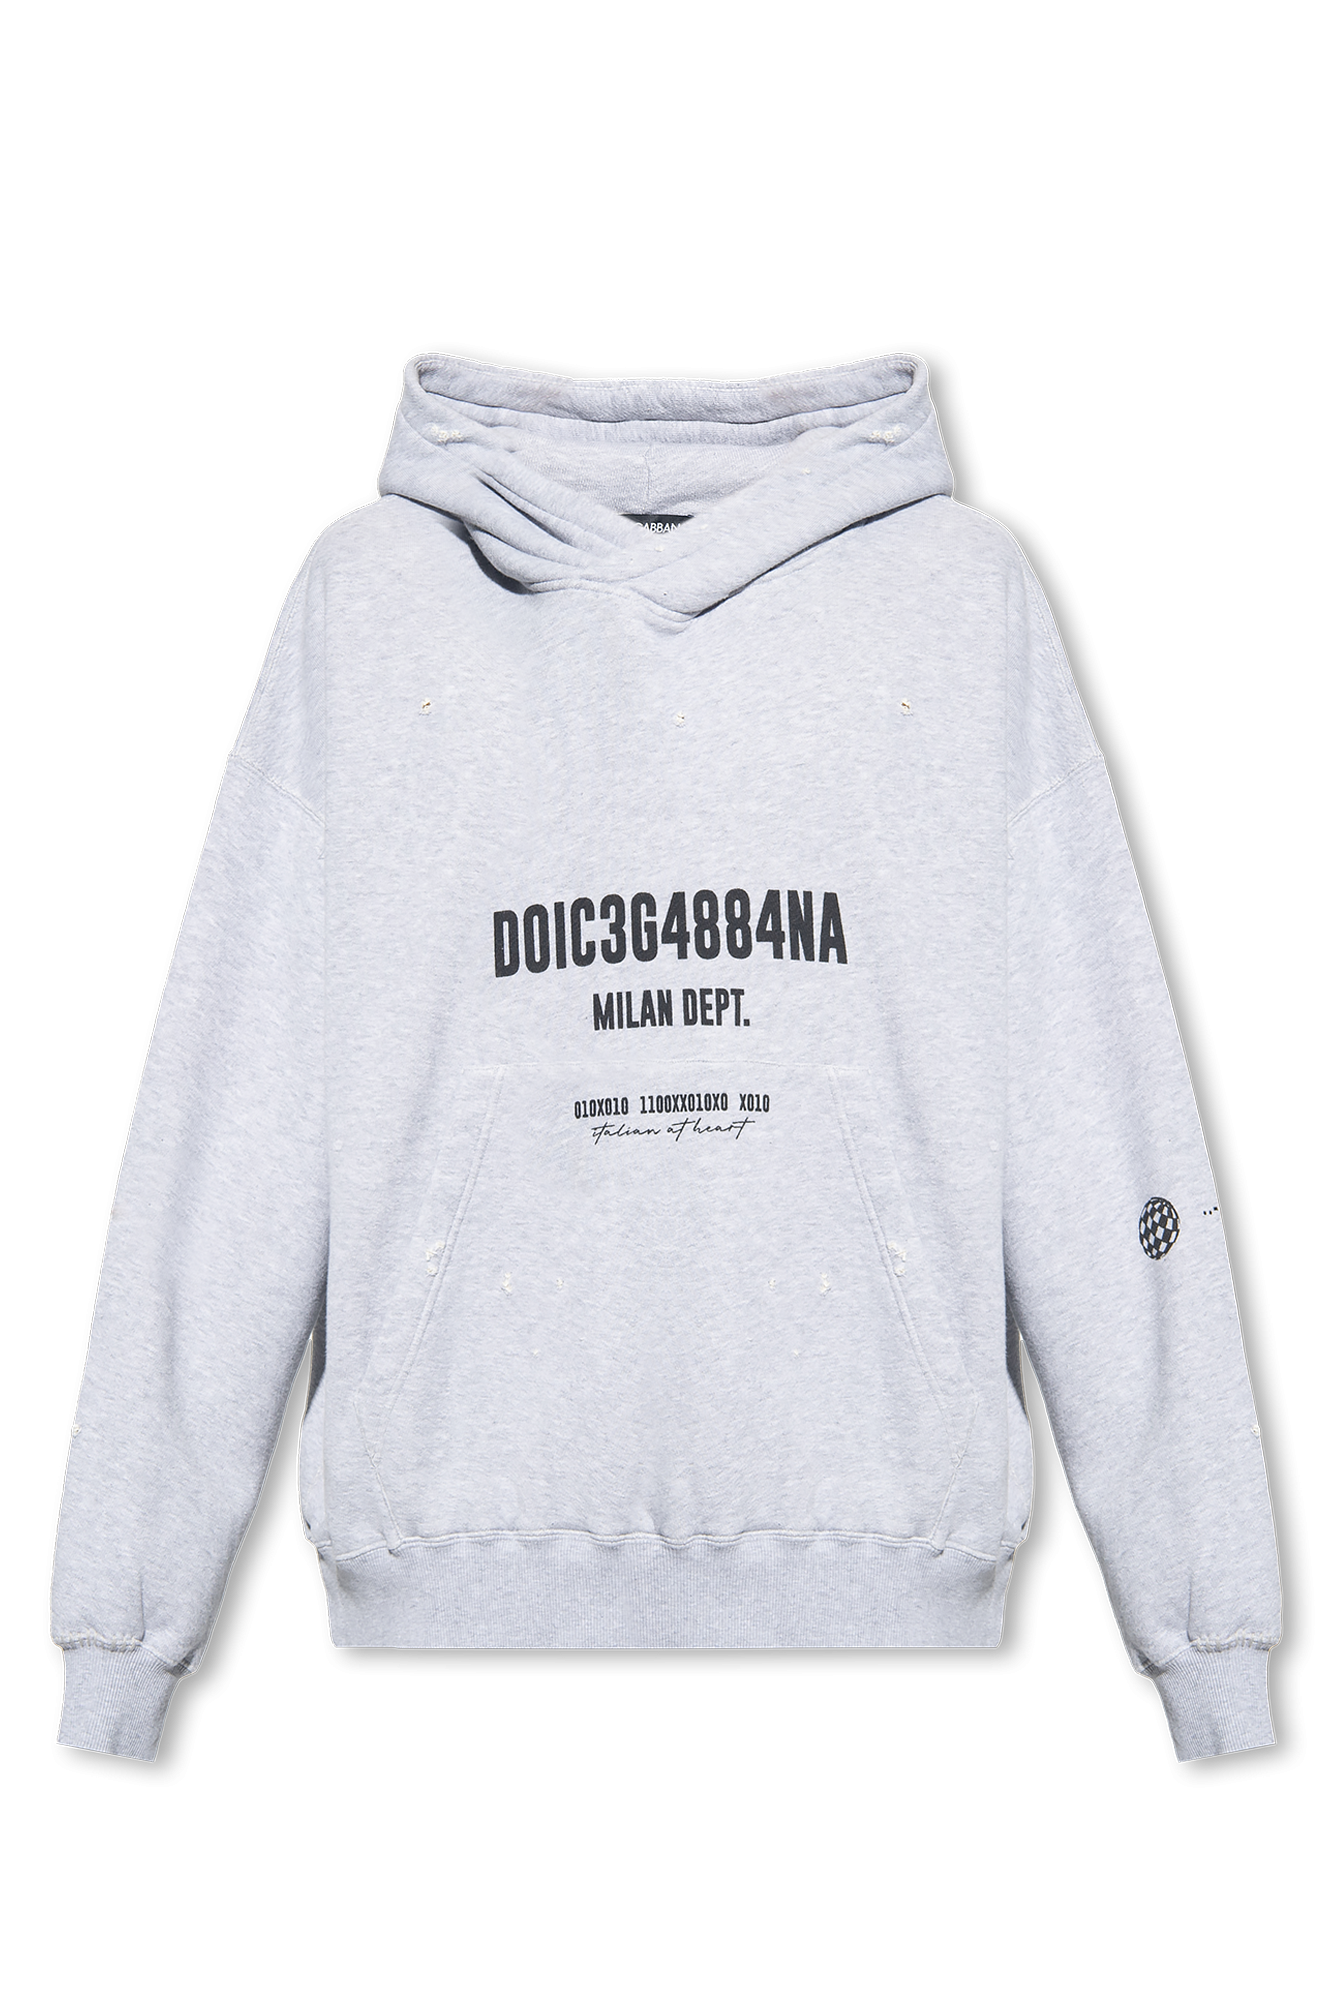 SchaferandweinerShops Bhutan - Grey Printed hoodie Dolce & Gabbana 